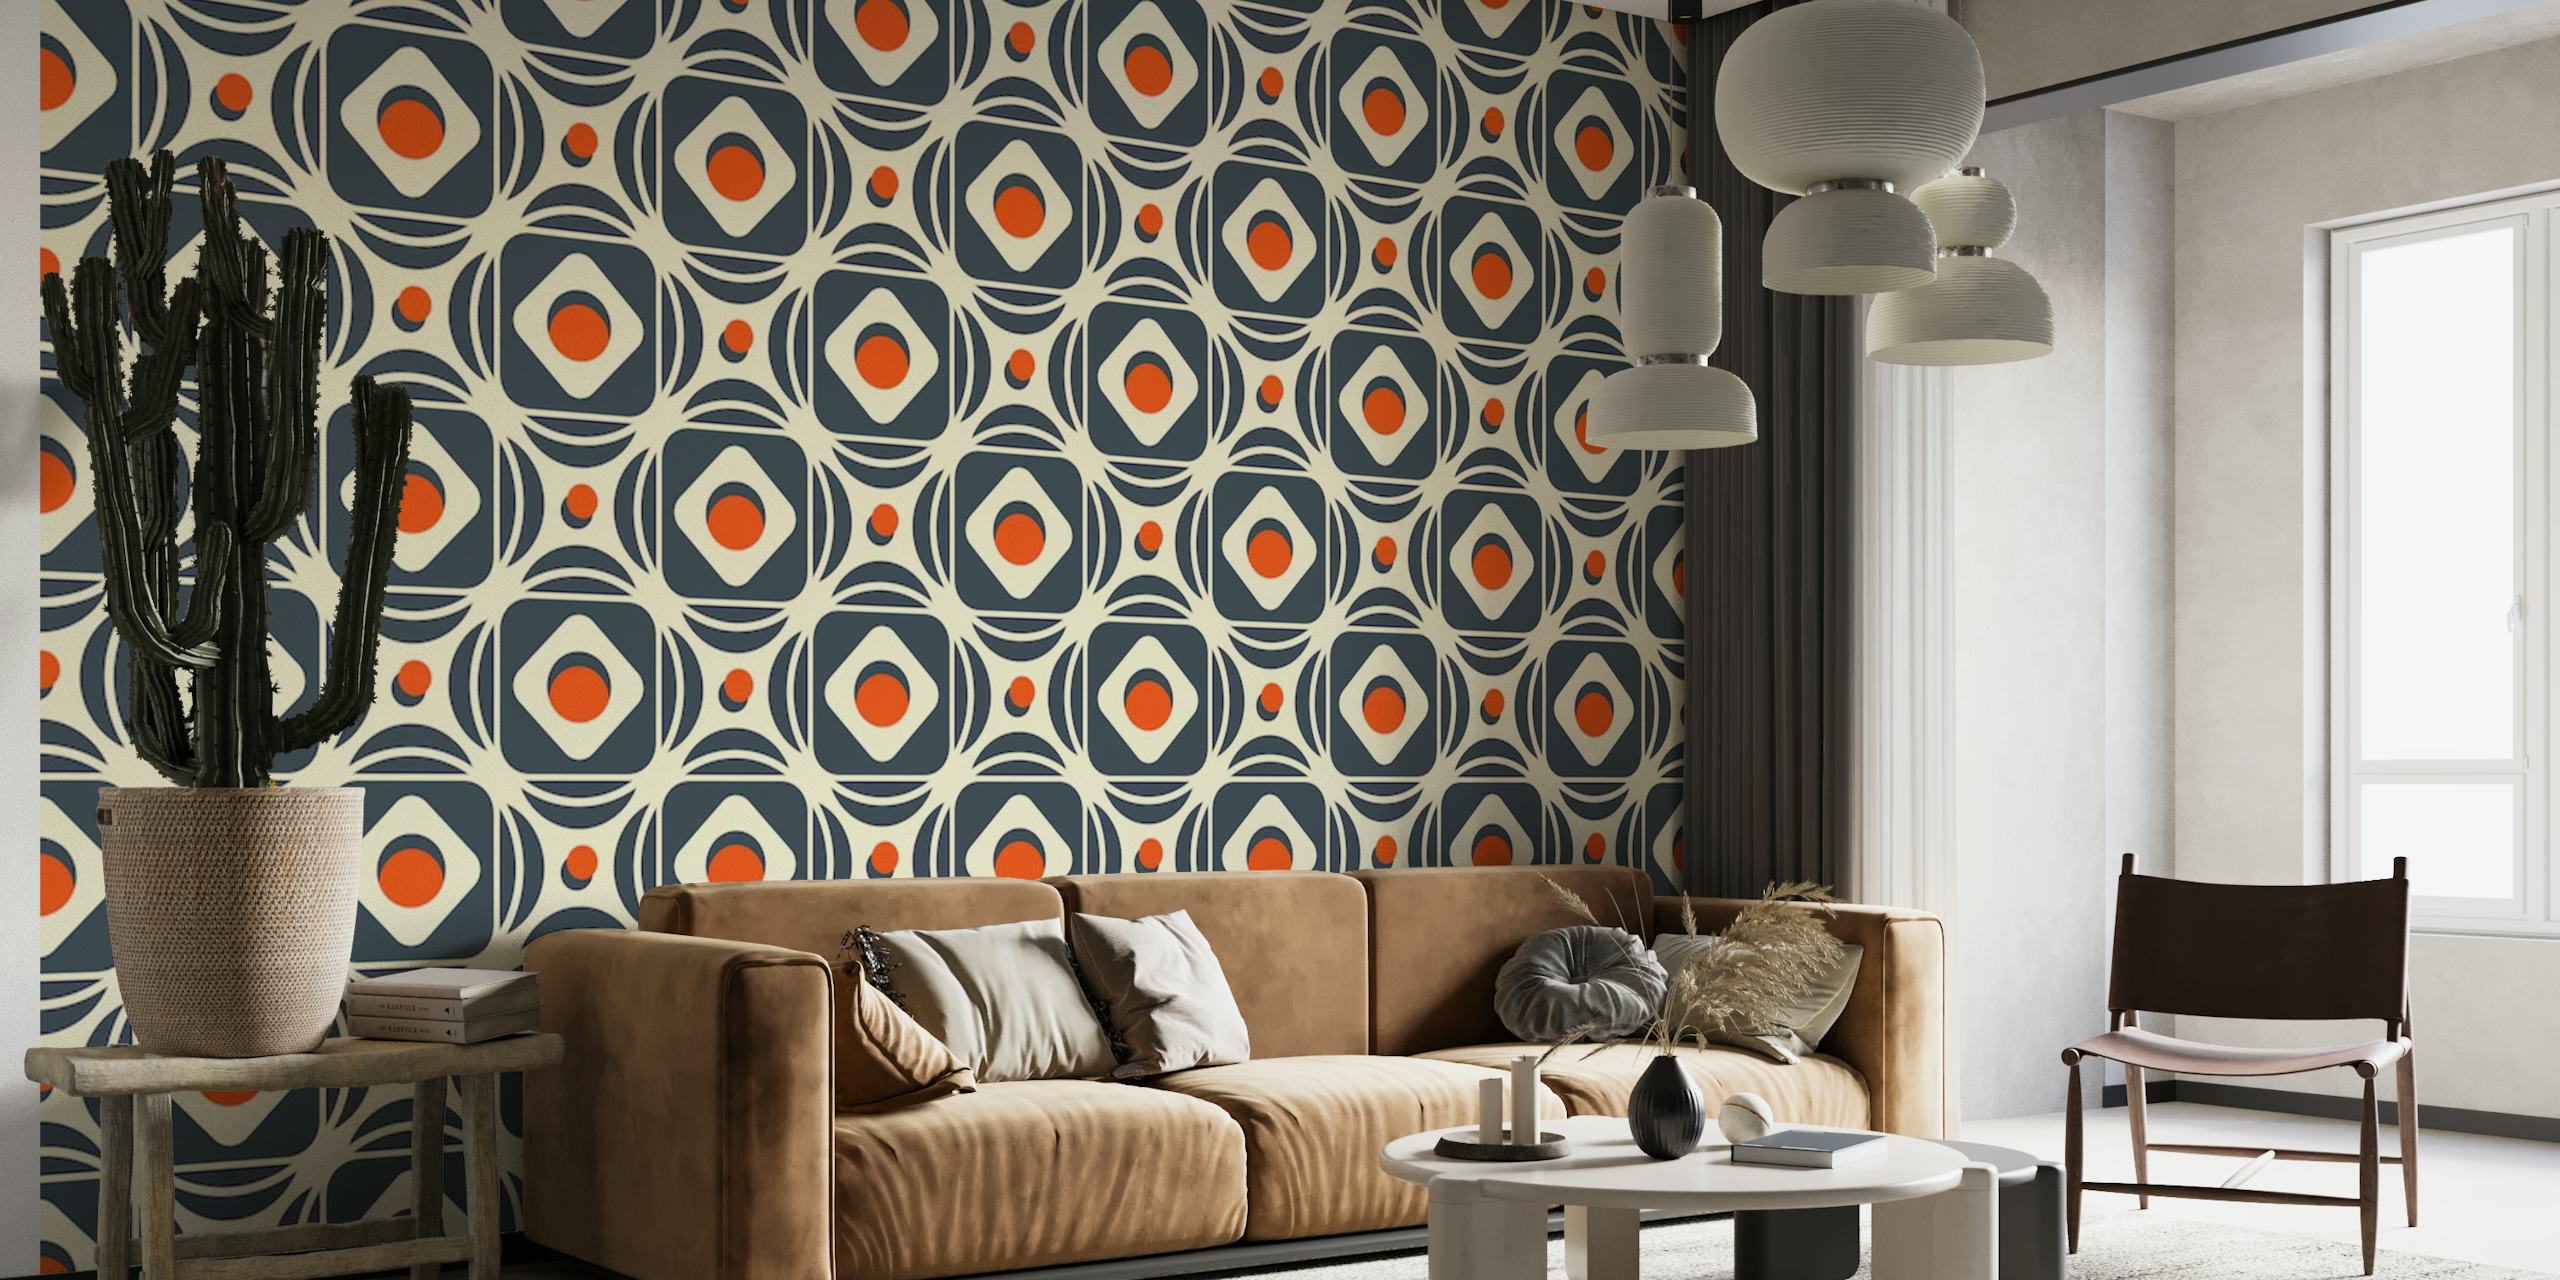 2184 Mural de parede geométrico abstrato com um padrão complexo de formas e cores contrastantes